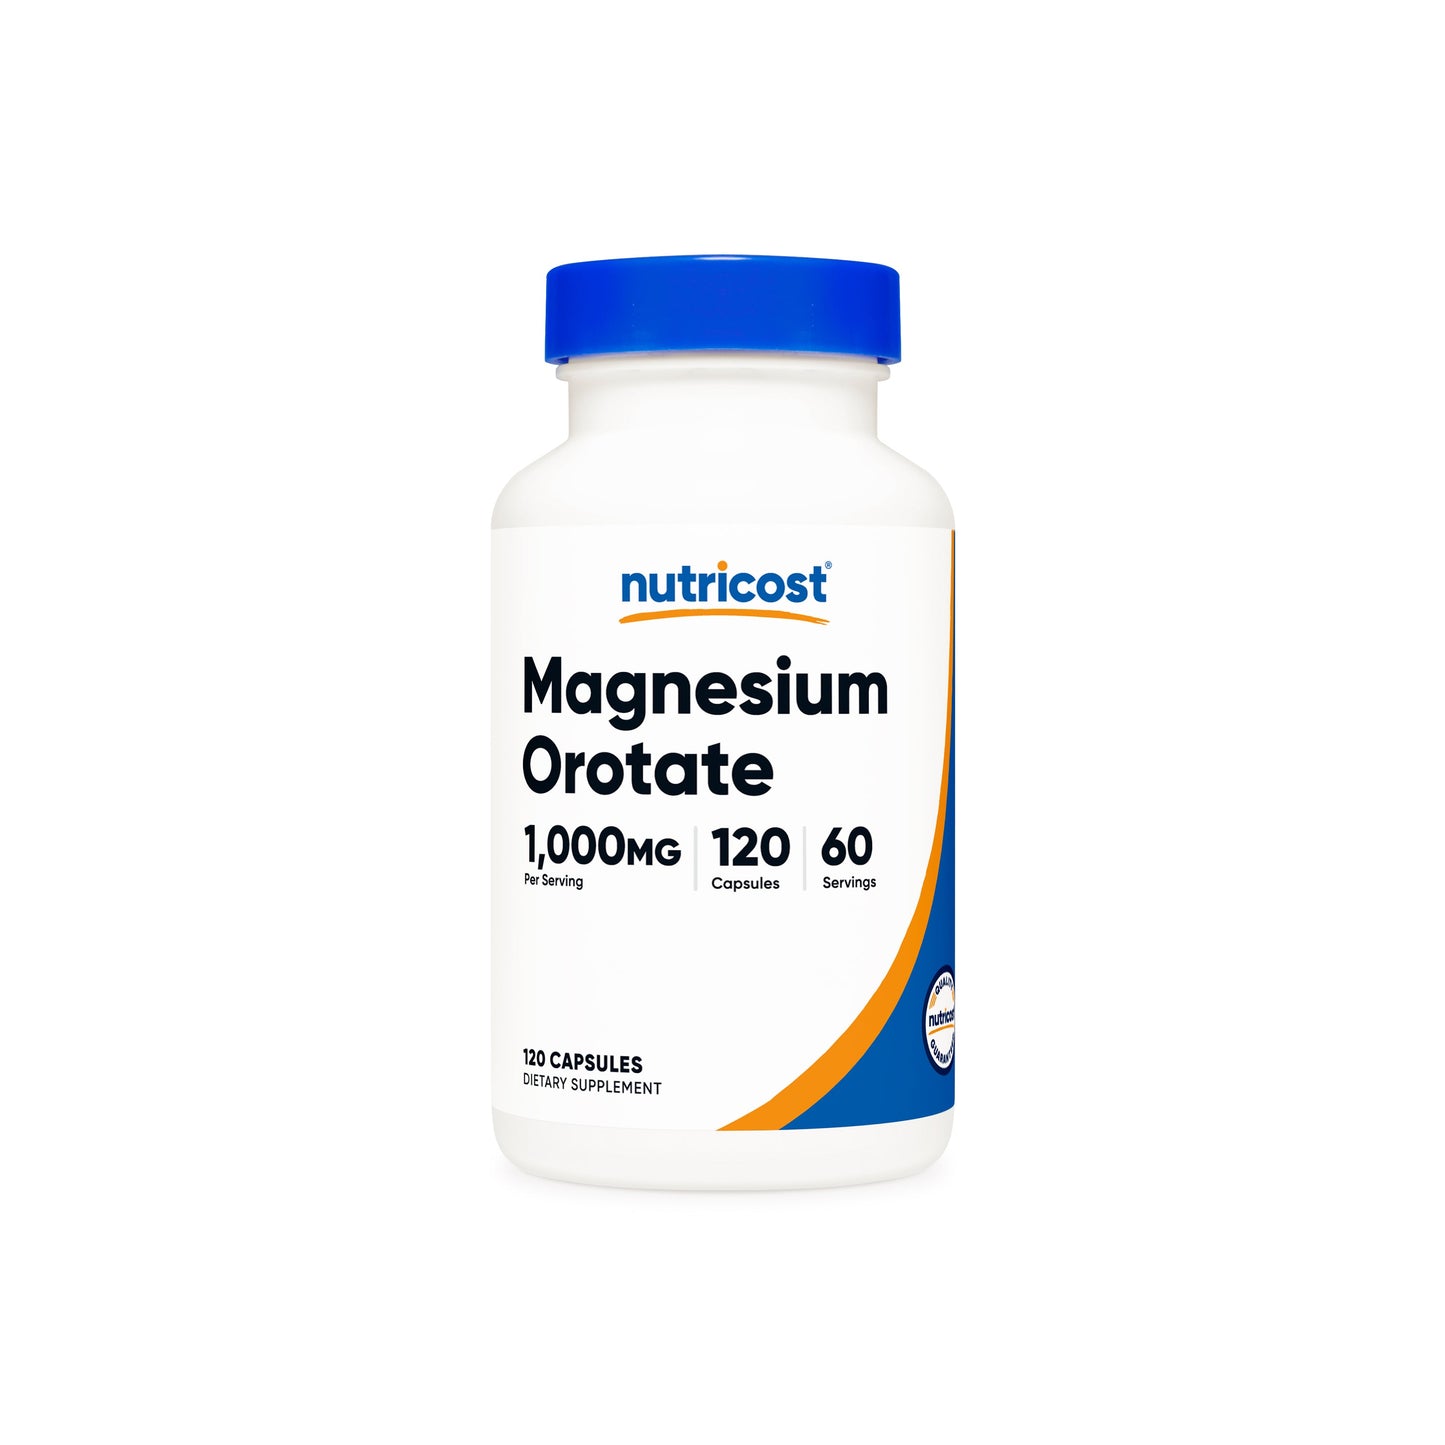 Nutricost Magnesium Orotate